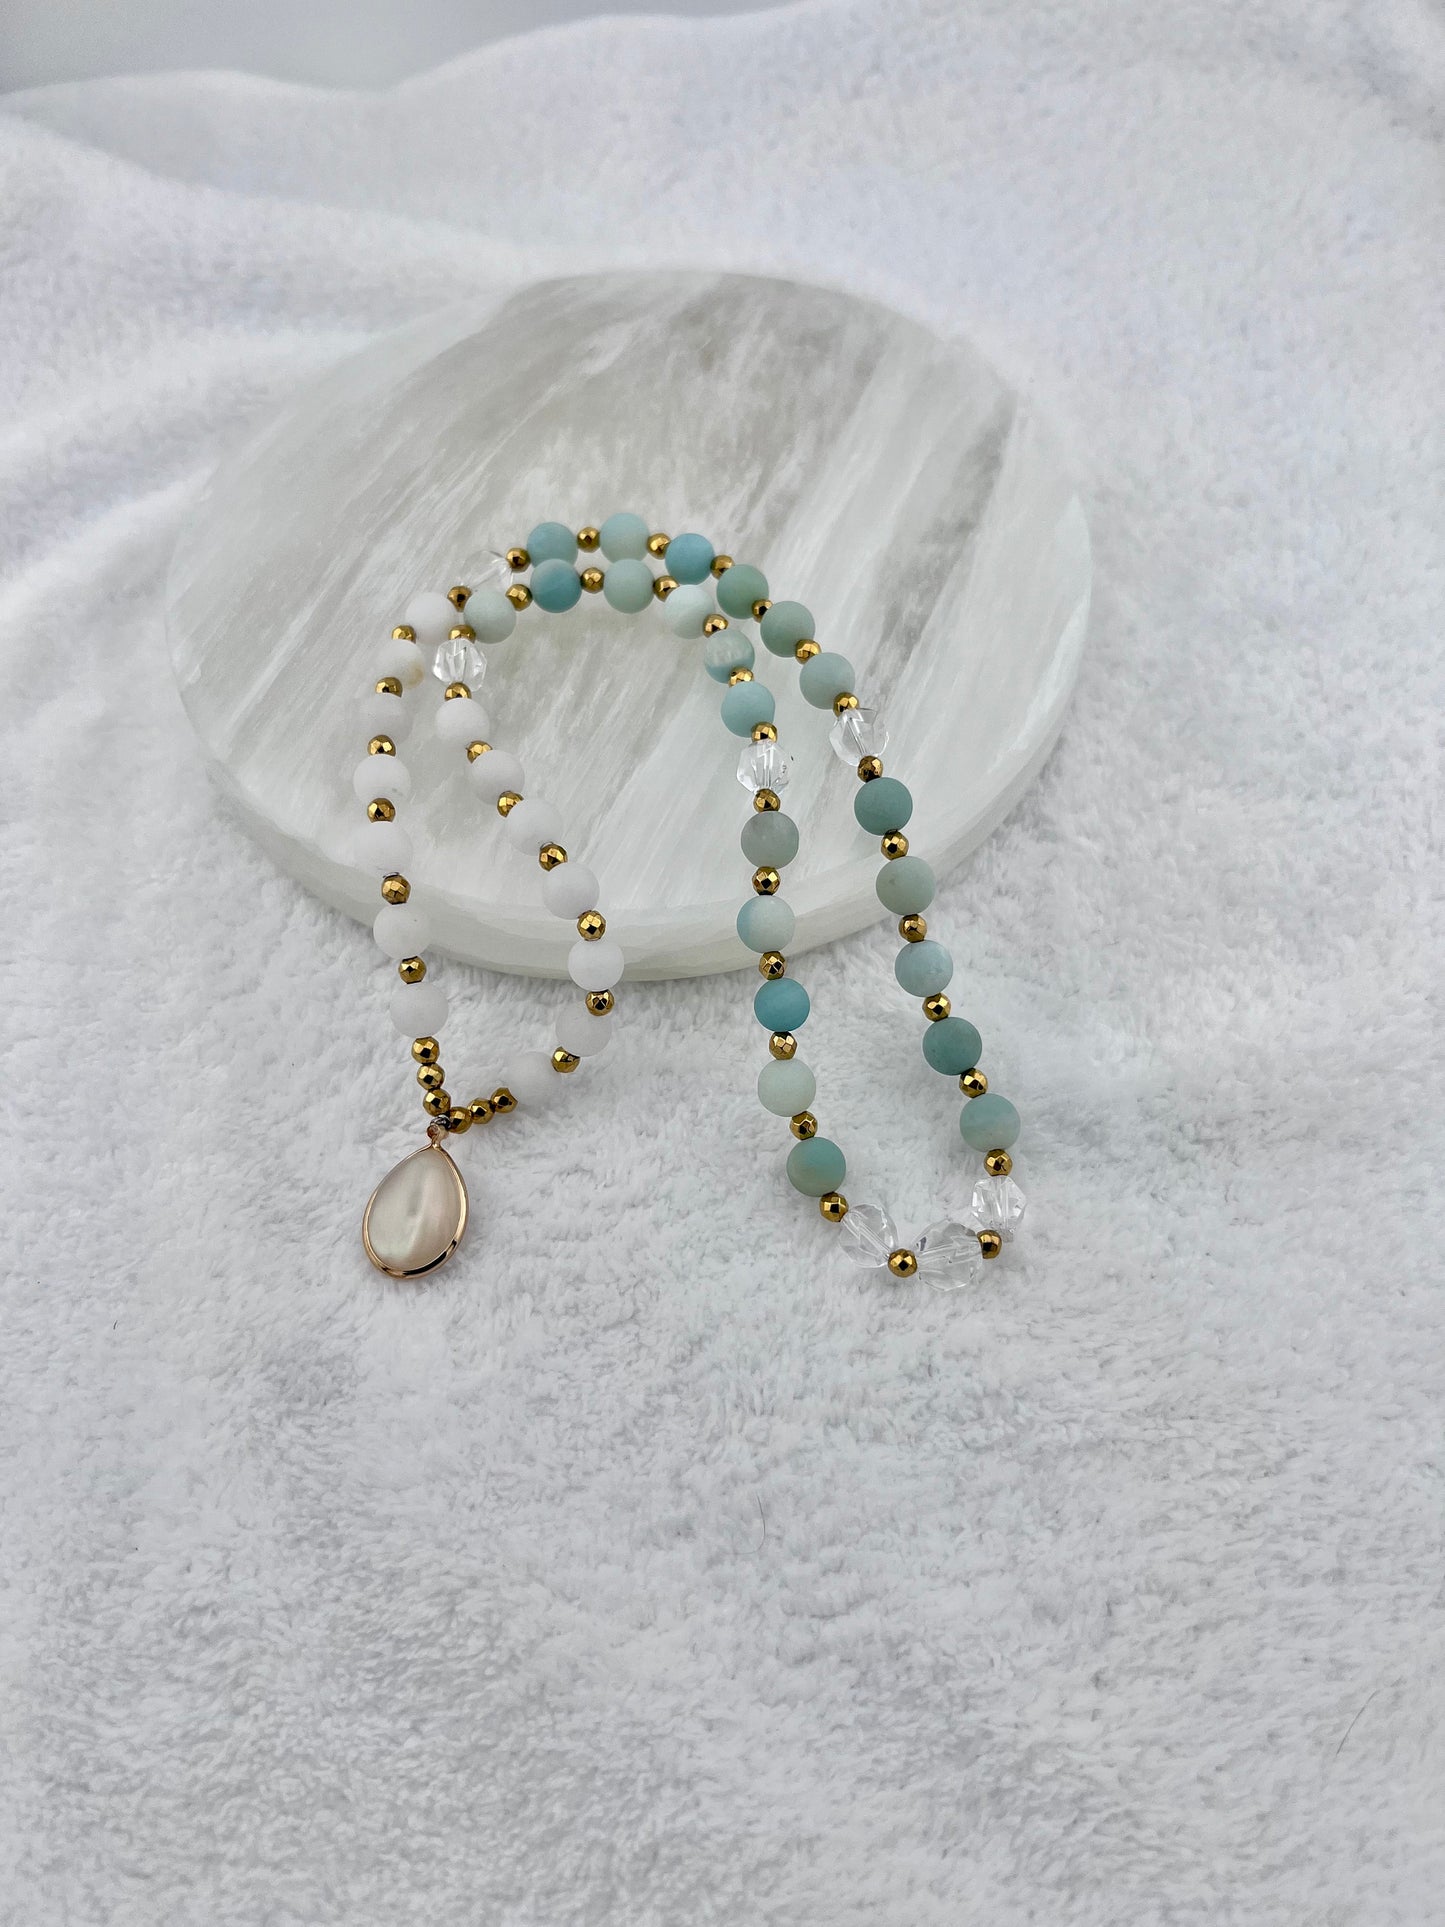 Amazonite gemstone custom mini Mala mediation practice yoga necklace layered bracelet natural healing self care support gift wedding bridal